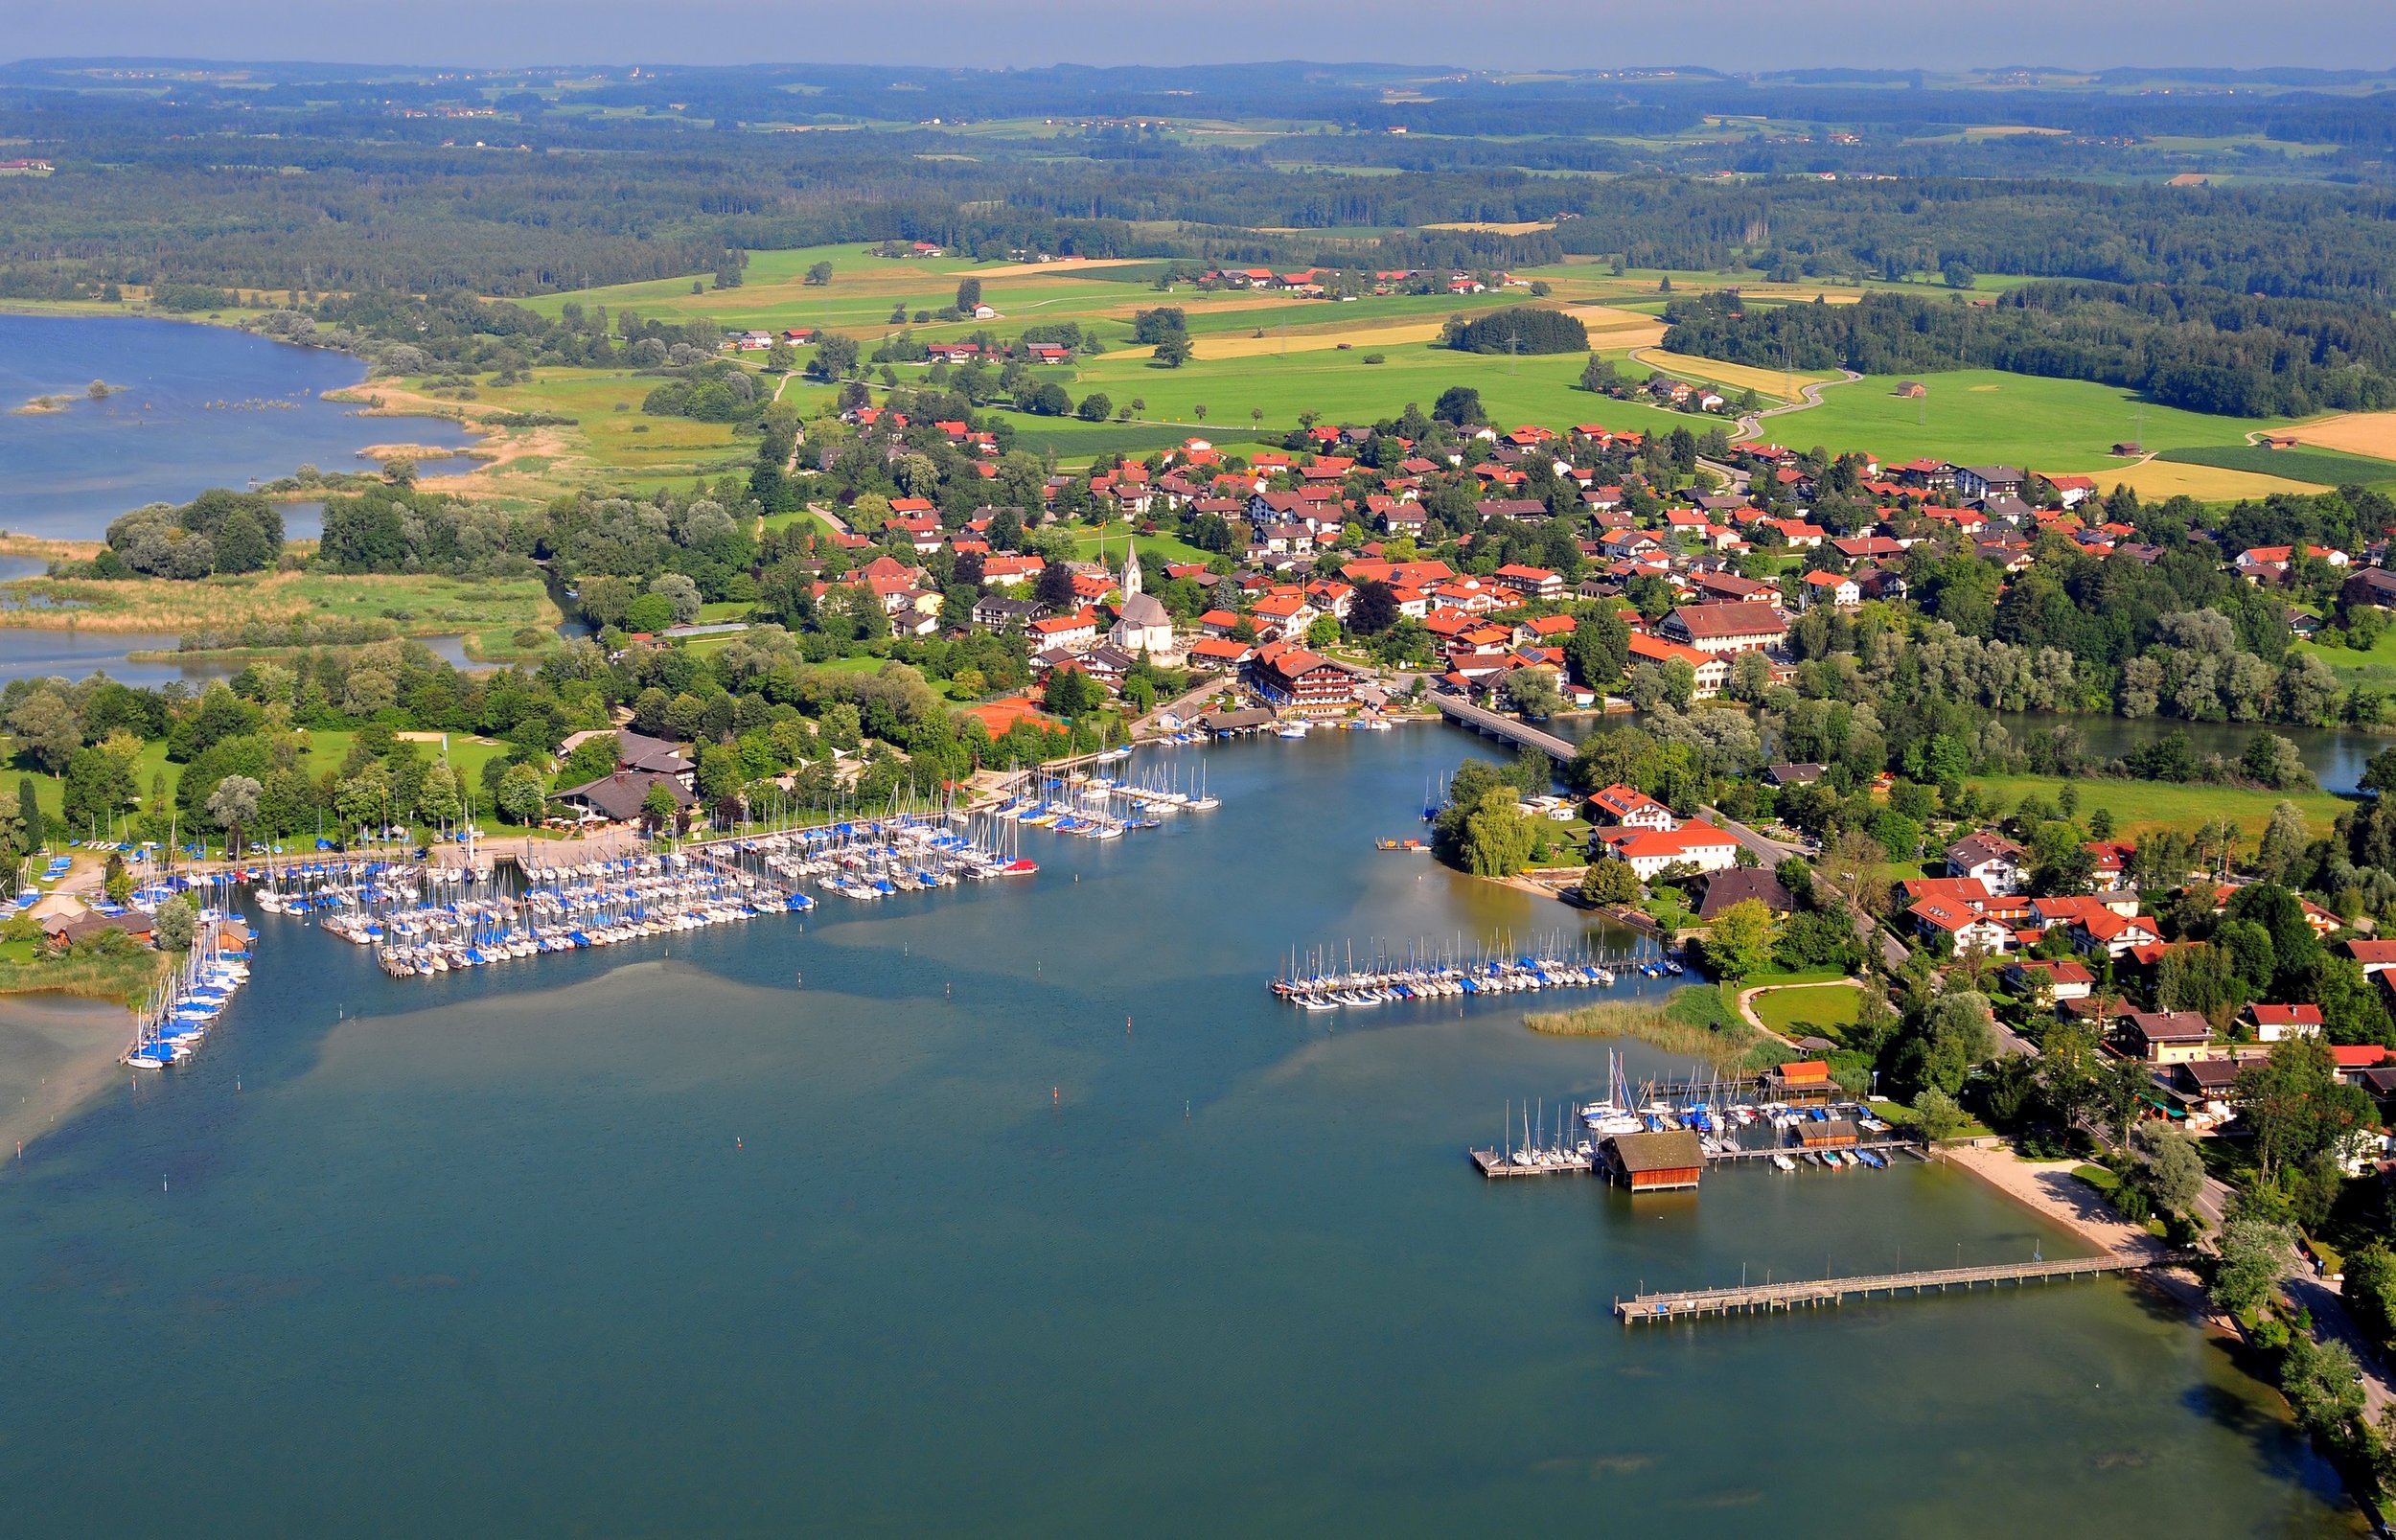 Luftbild der Gemeinde Seeon-Seebruck